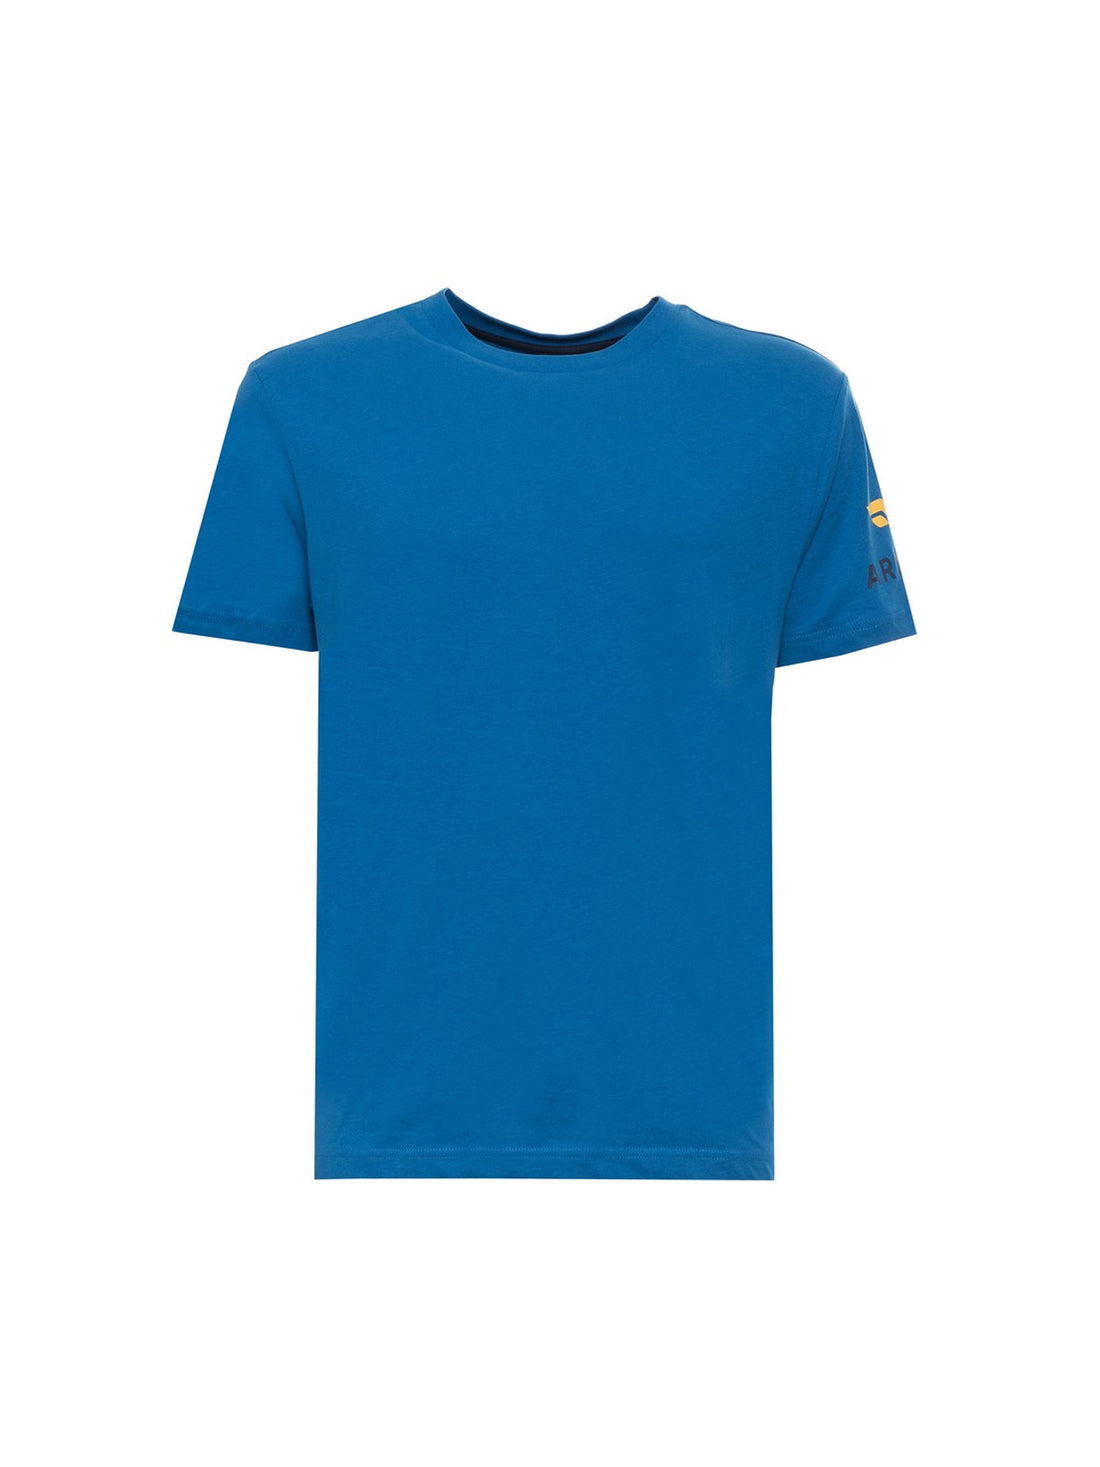 T-shirt Bluette Armata Di Mare